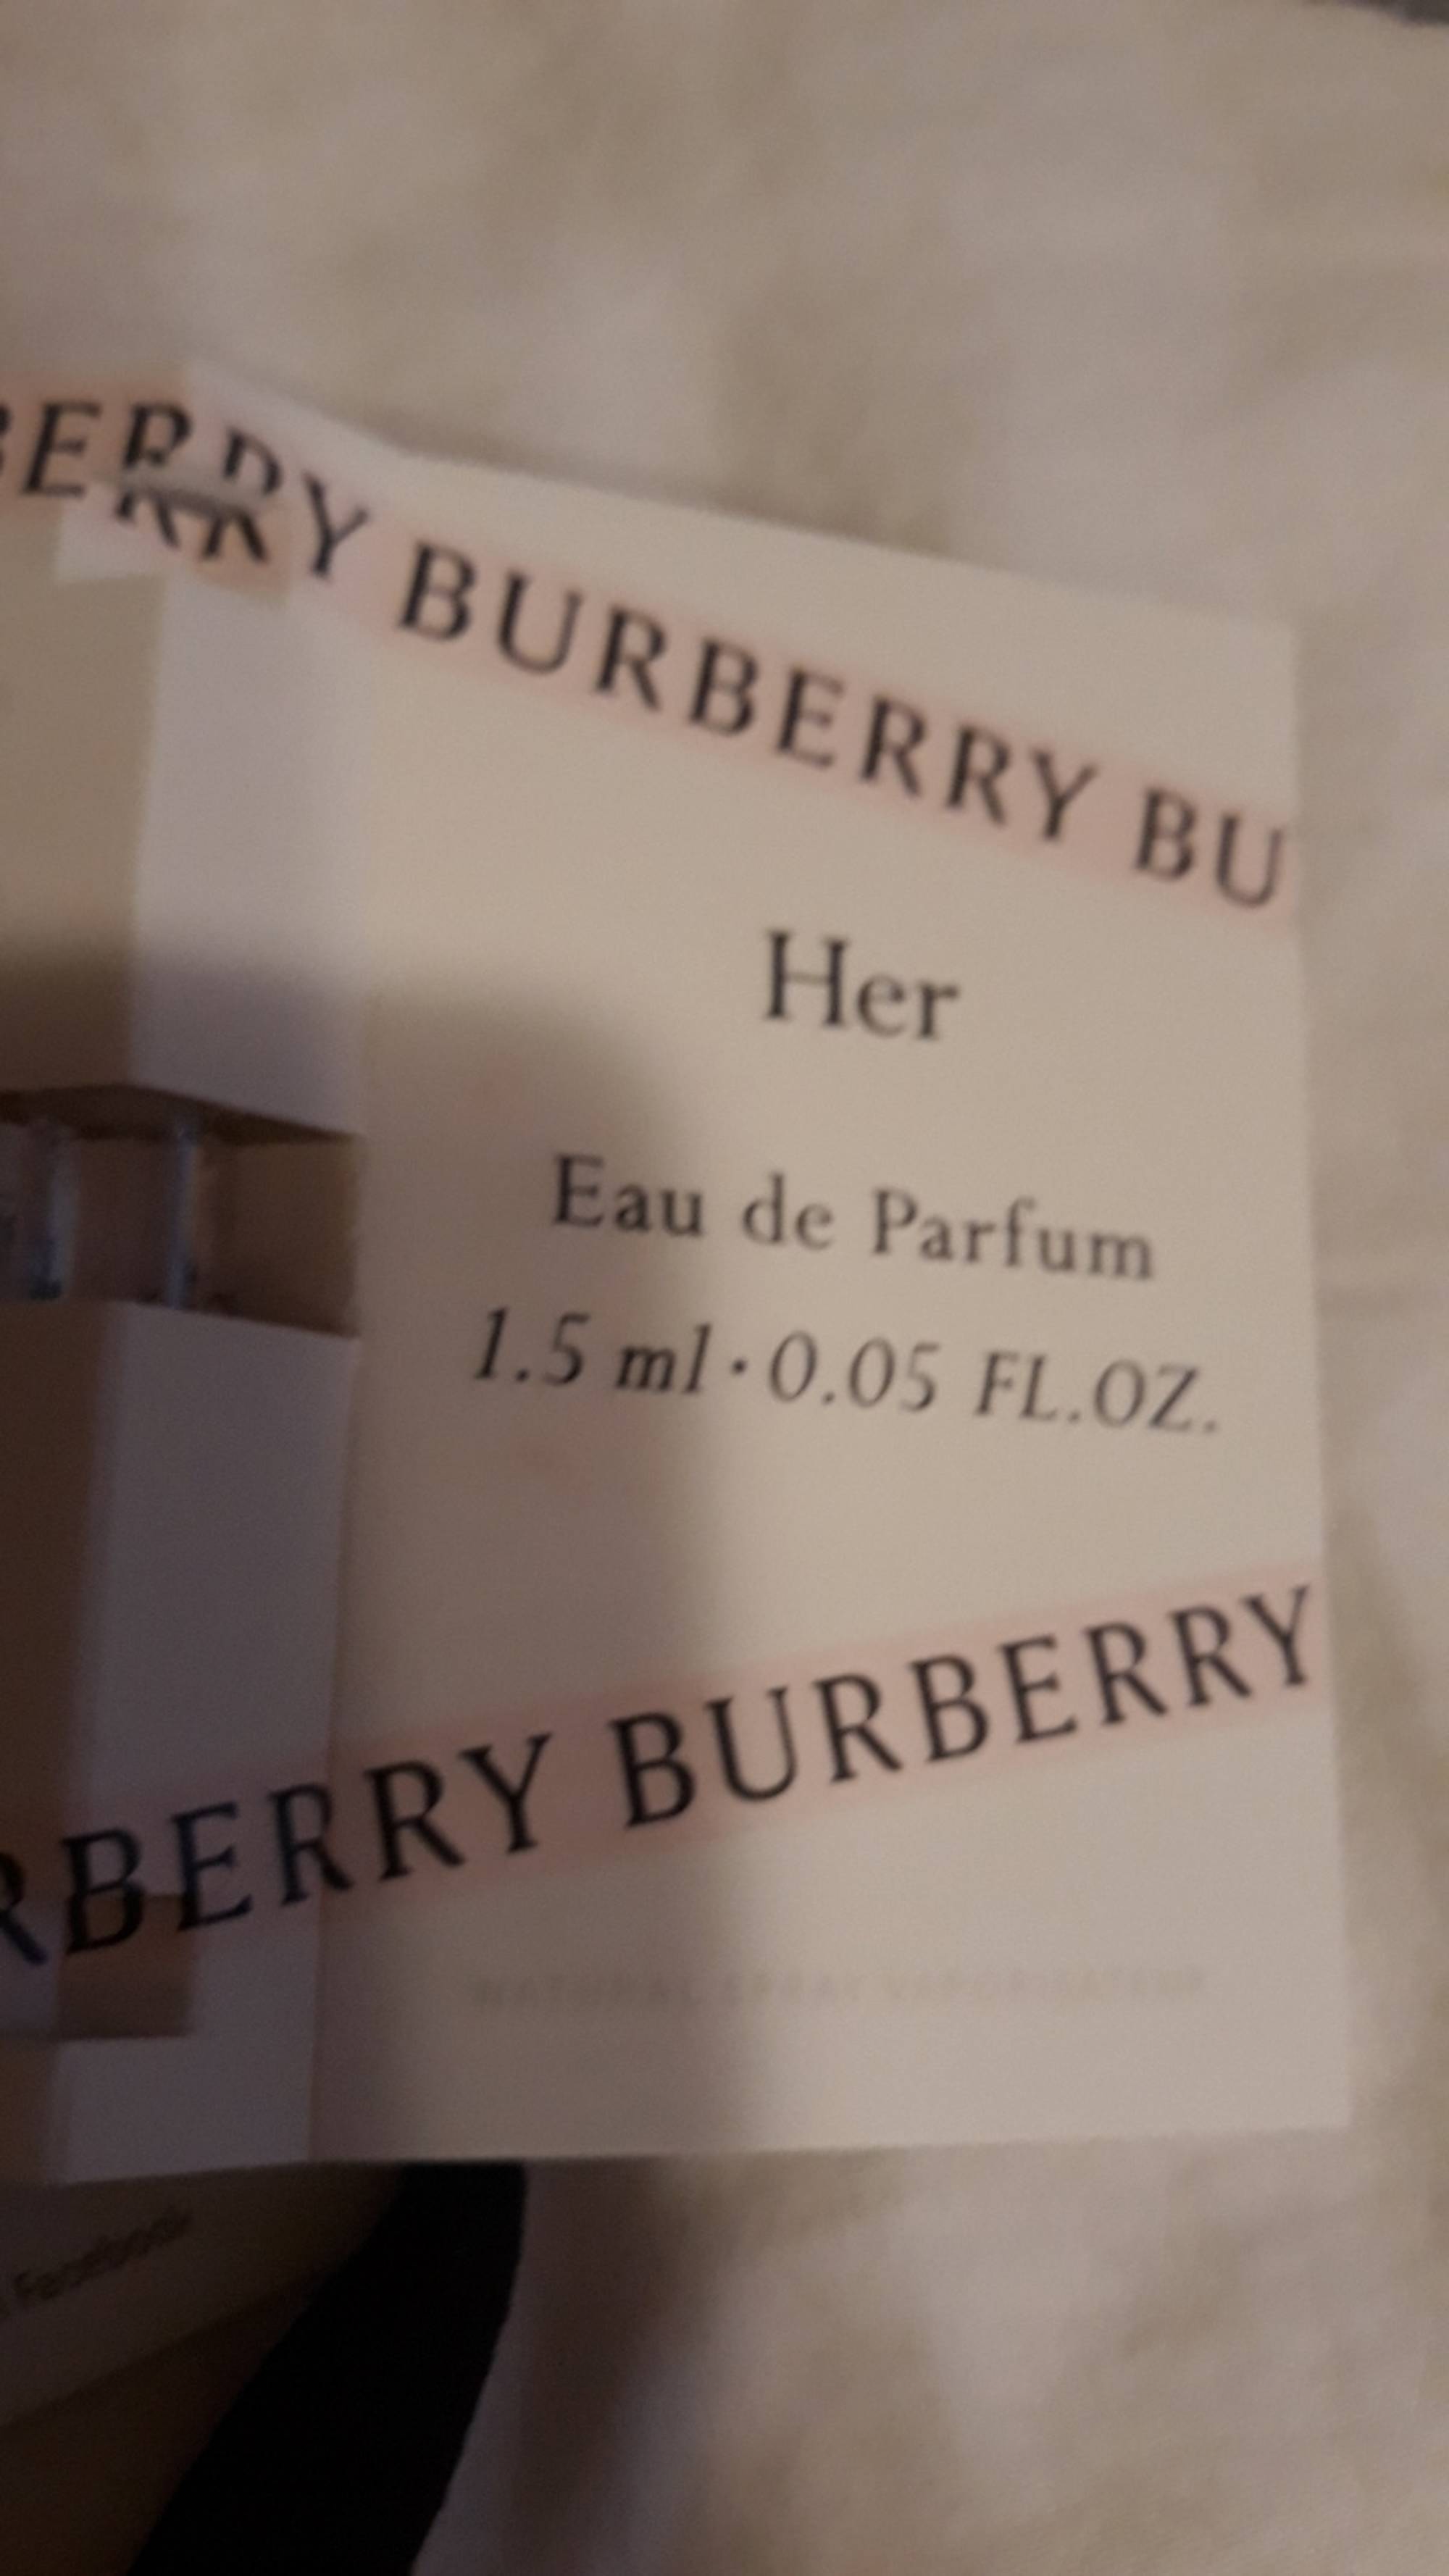 BURBERRY - Her - Eau de parfum